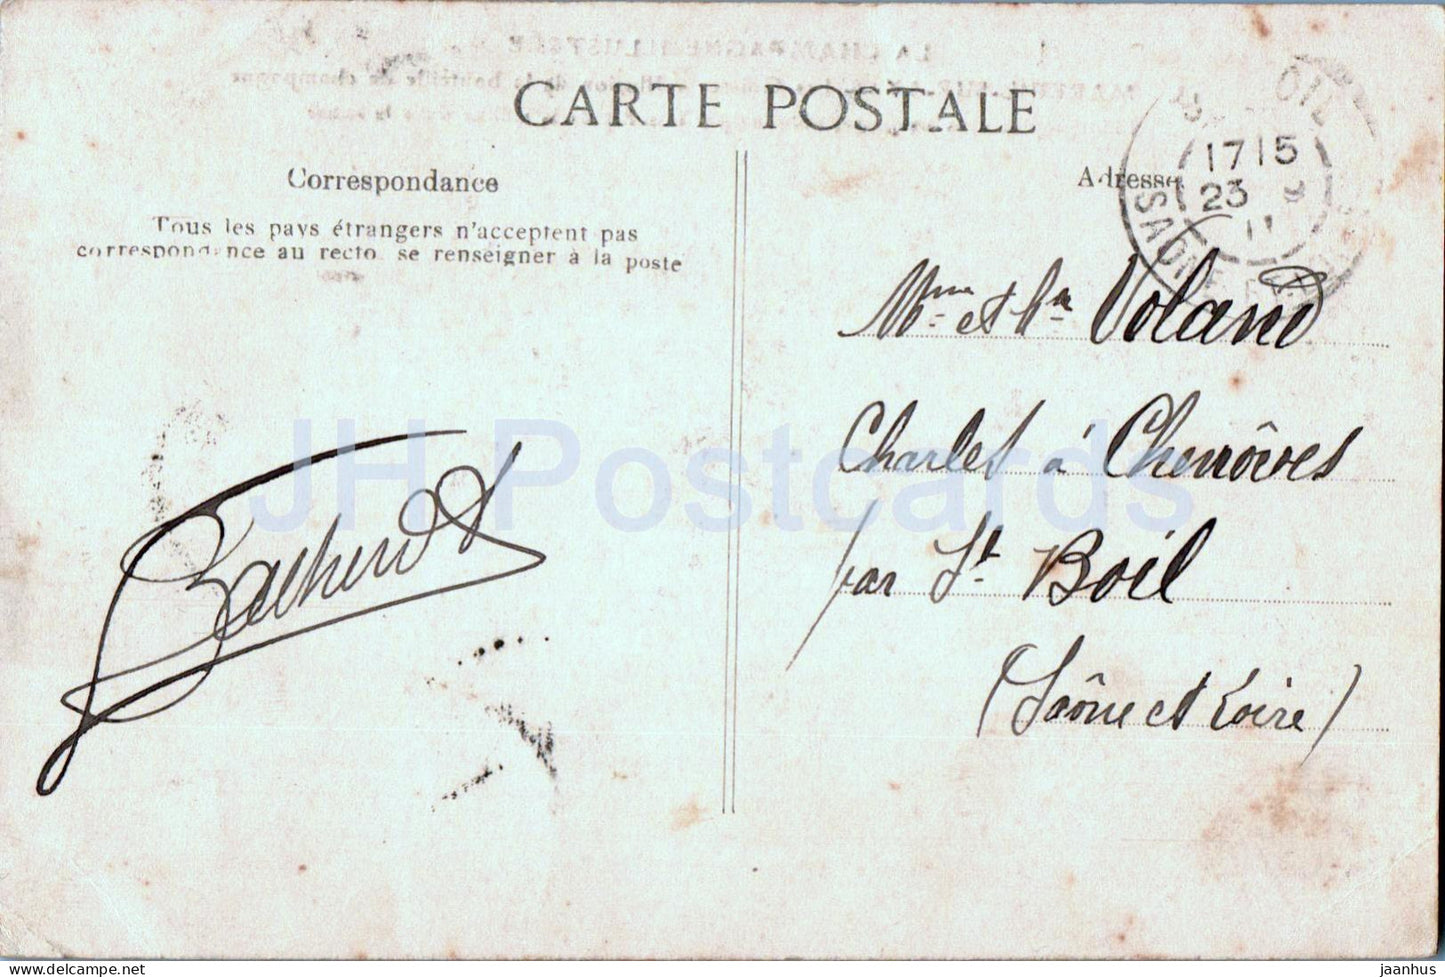 Mareuil sur Ay - Les Goisses - Illusion de la boteille de champagne - 13 - alte Postkarte - 1911 - Frankreich - gebraucht 